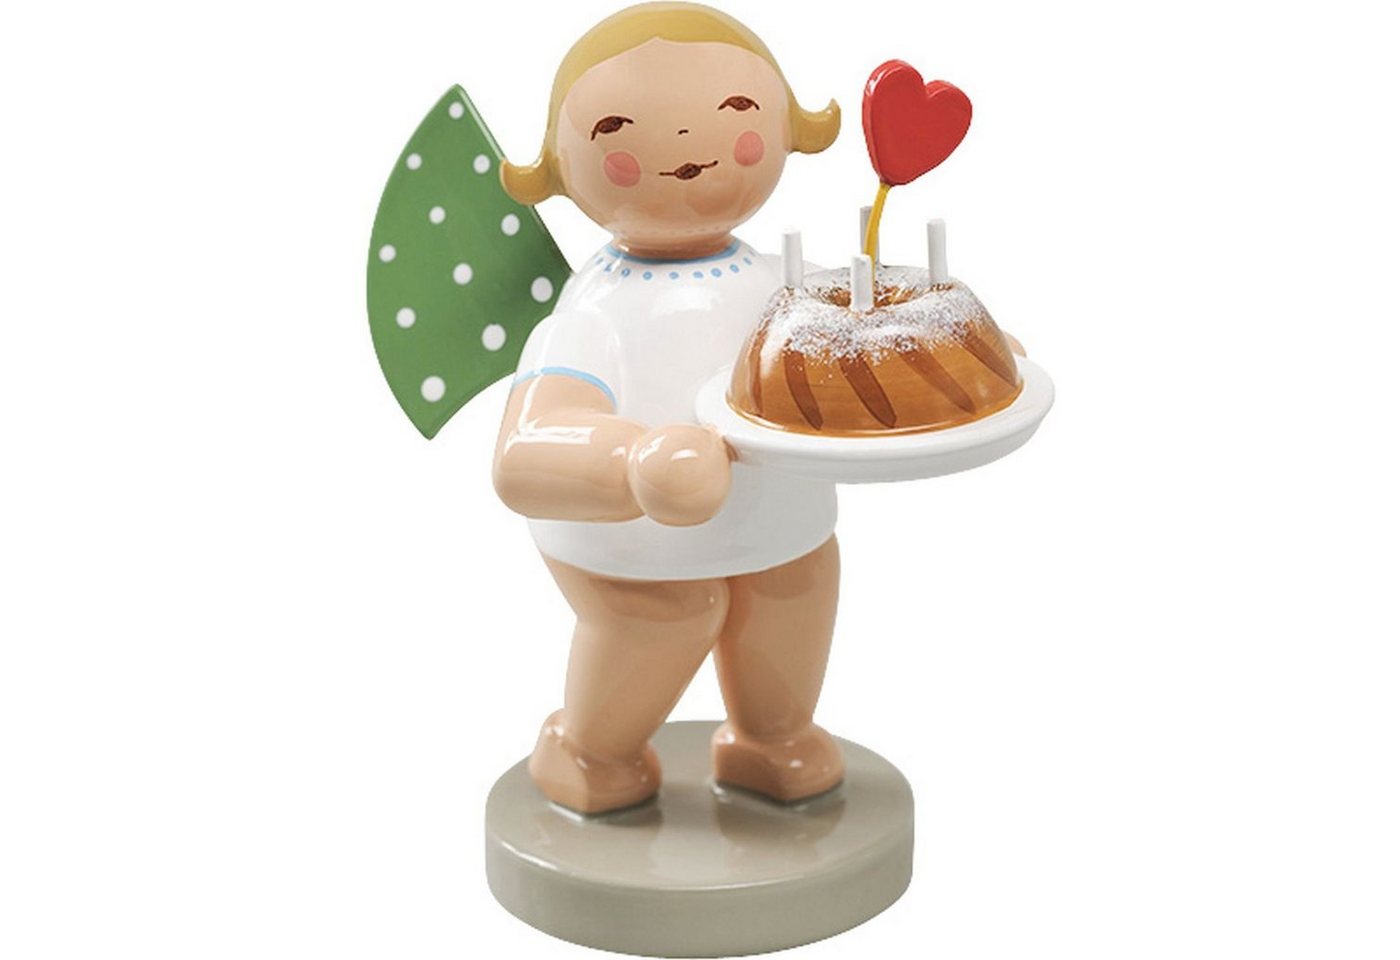 Wendt & Kühn Weihnachtsfigur Engel mit Kuchen und Herz 650/154, Haarfarbe zufällig blond oder braunhaarig von Wendt & Kühn